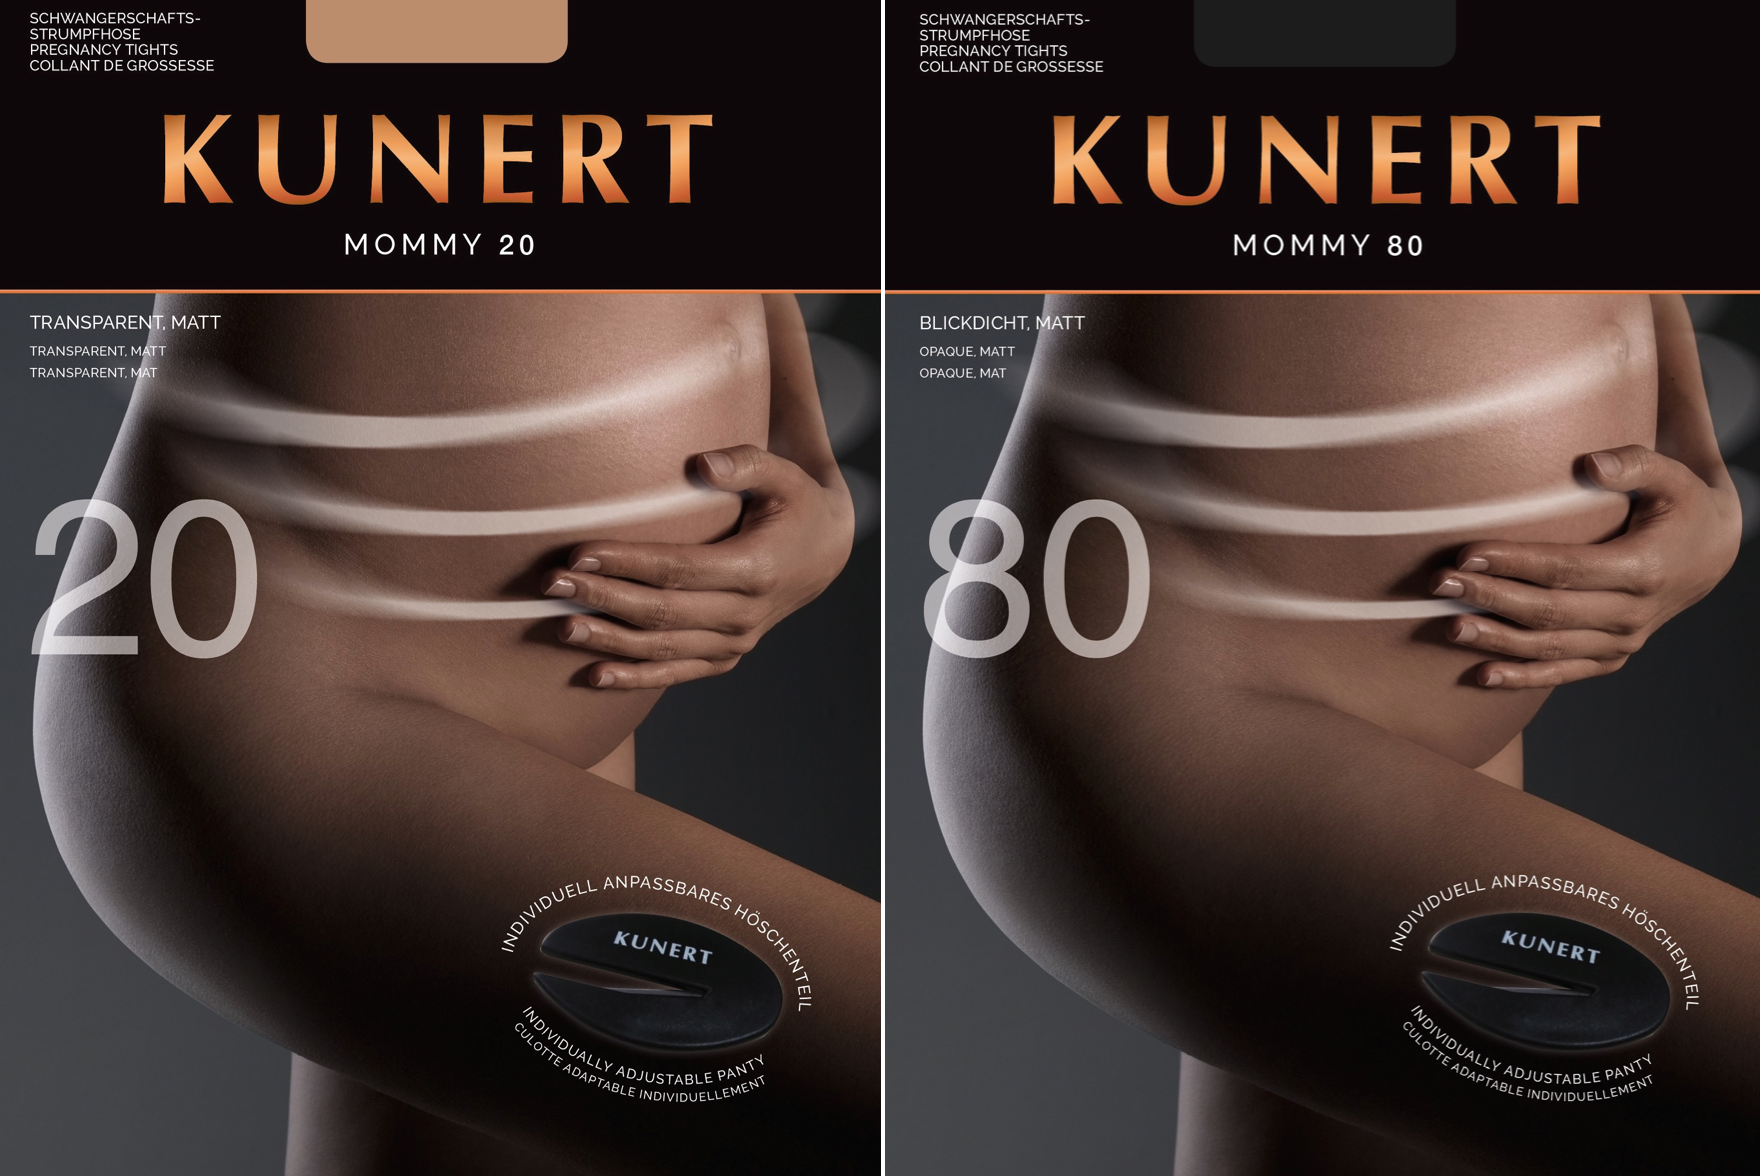 Schwangerschaftsstrumpfhose Tommy Tights von Kunert